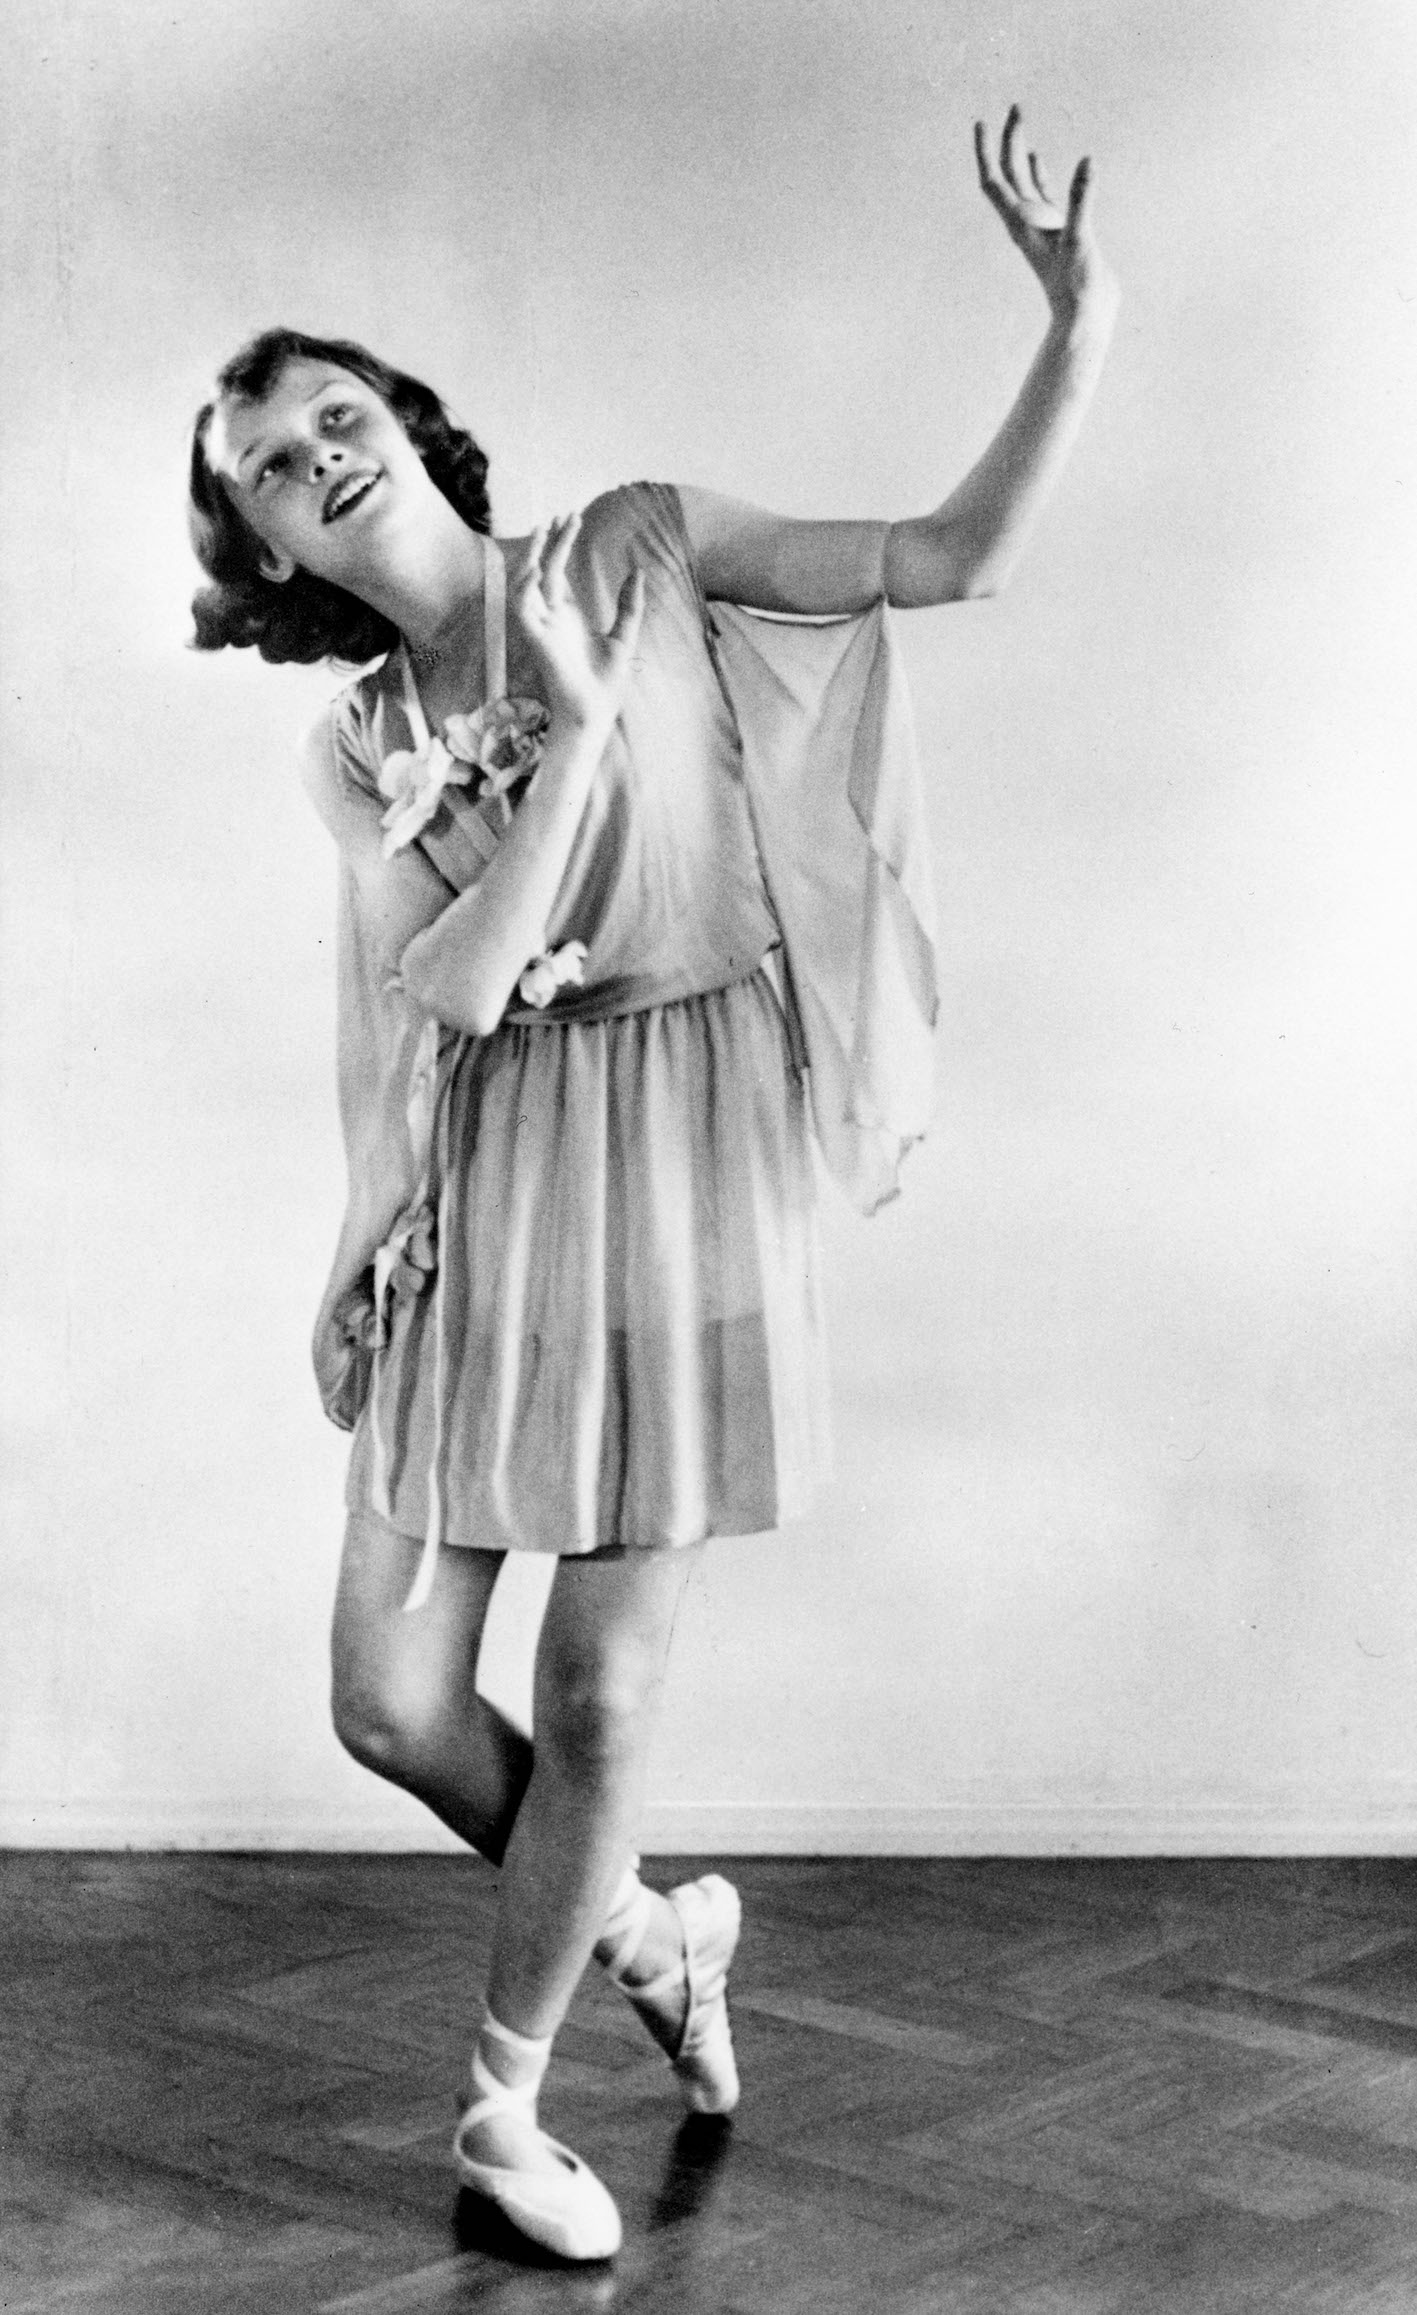 1942 during war, dance shot